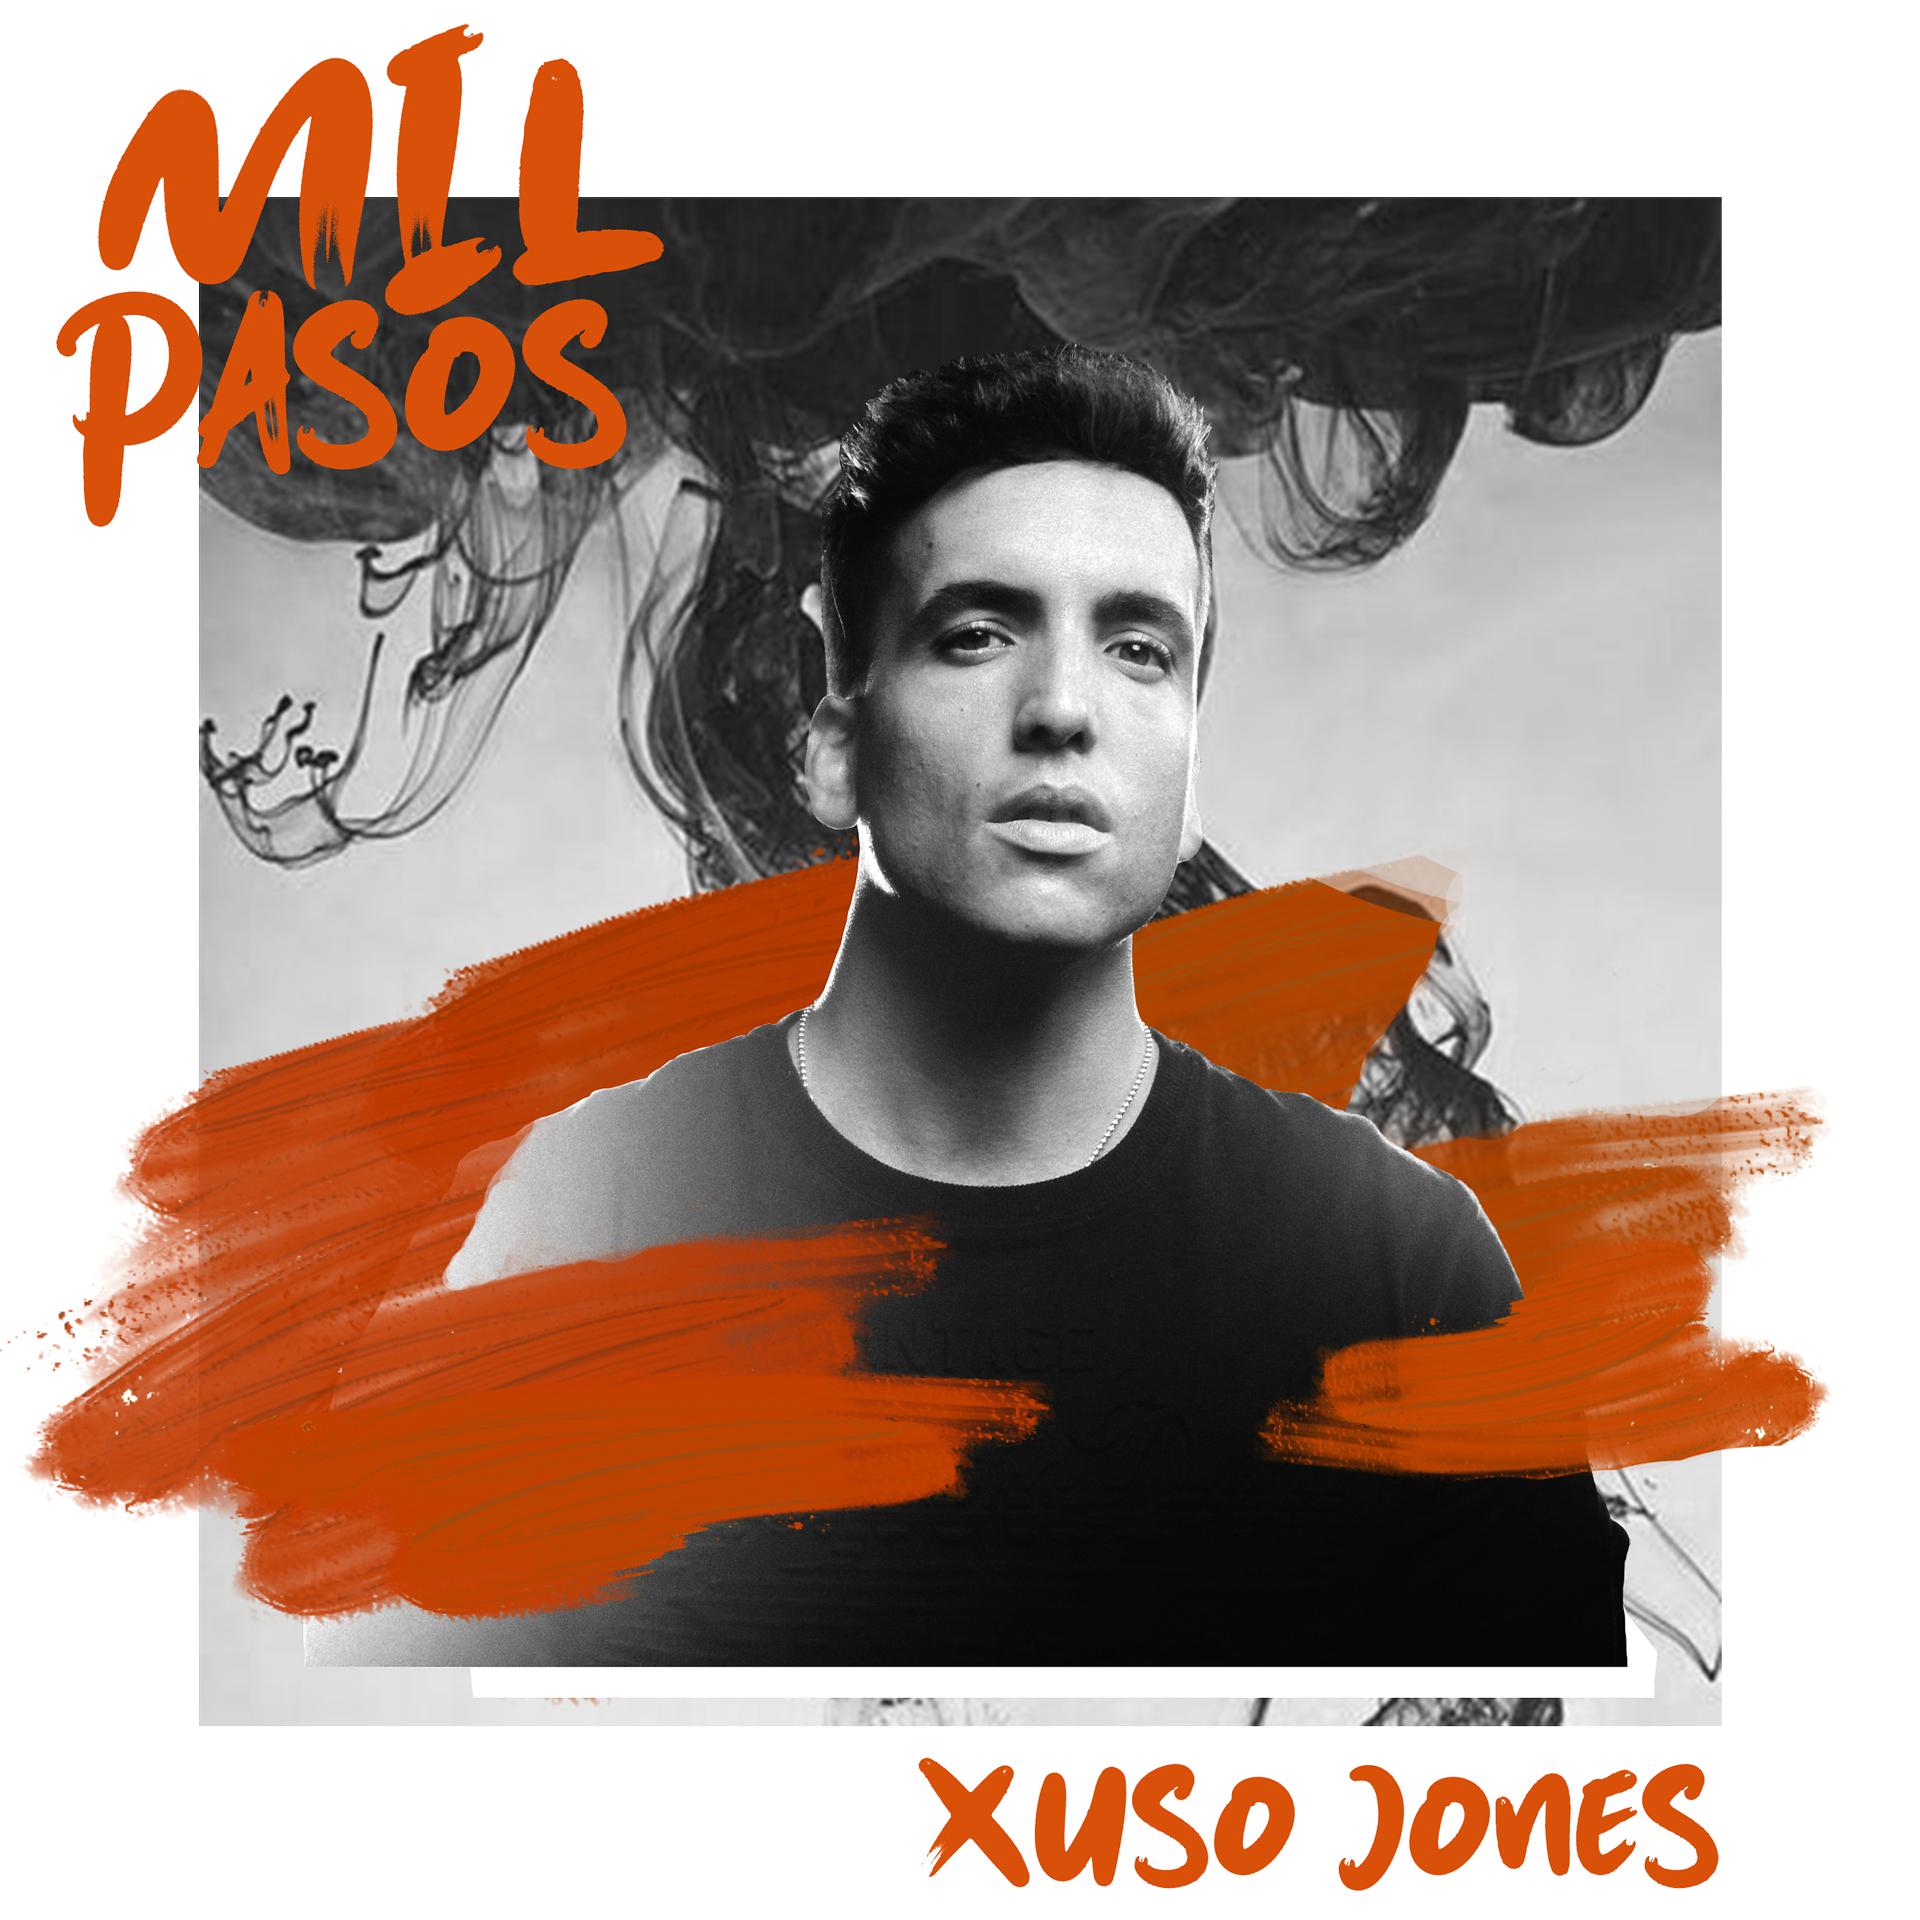 Постер альбома Mil Pasos